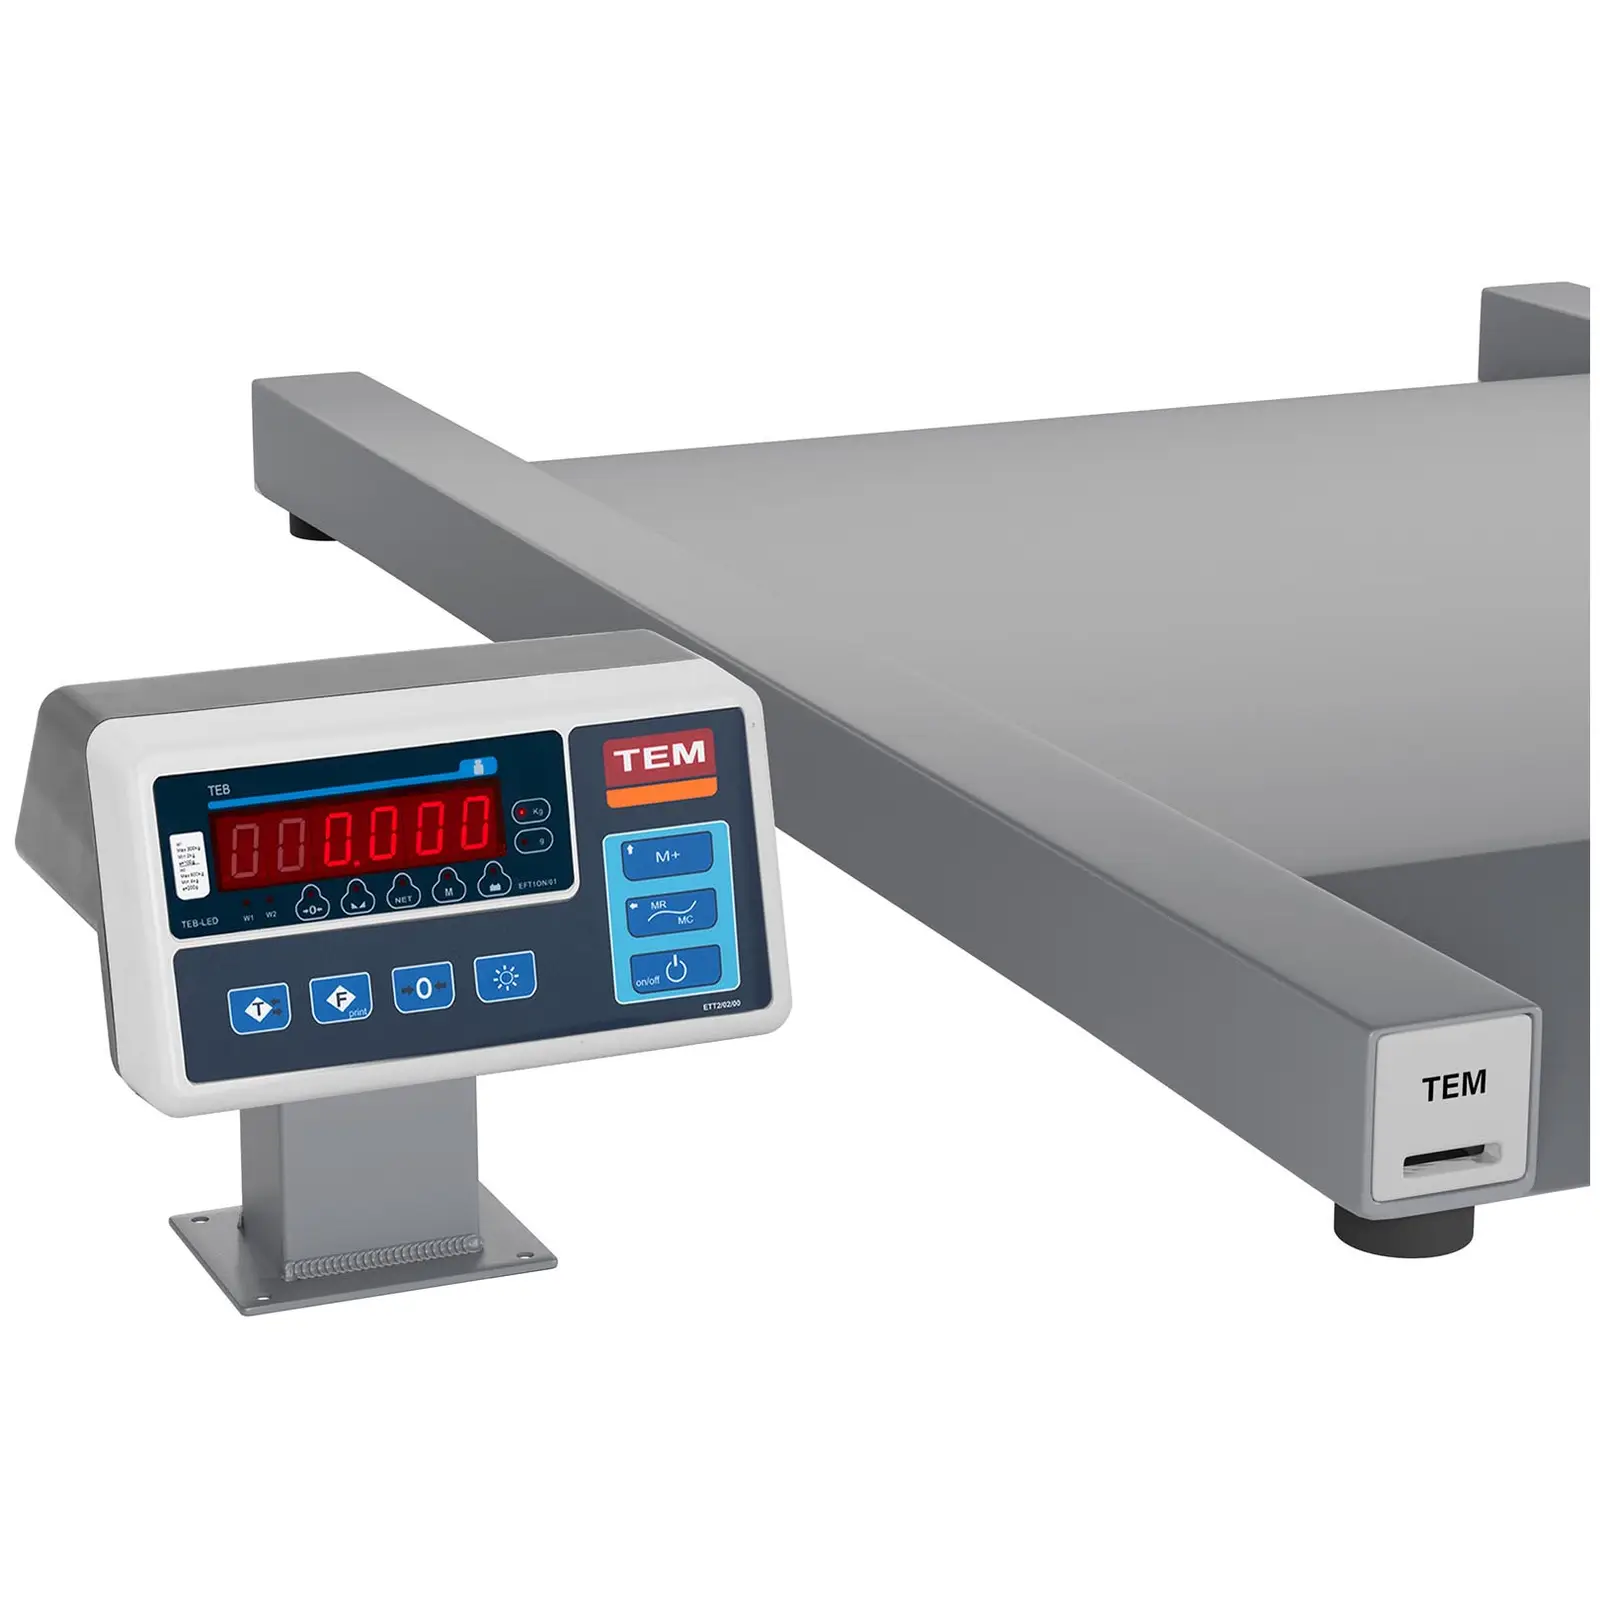 Podlahová váha - cejchovaná - 600 kg / 200 g - 100 x 90 cm - LED